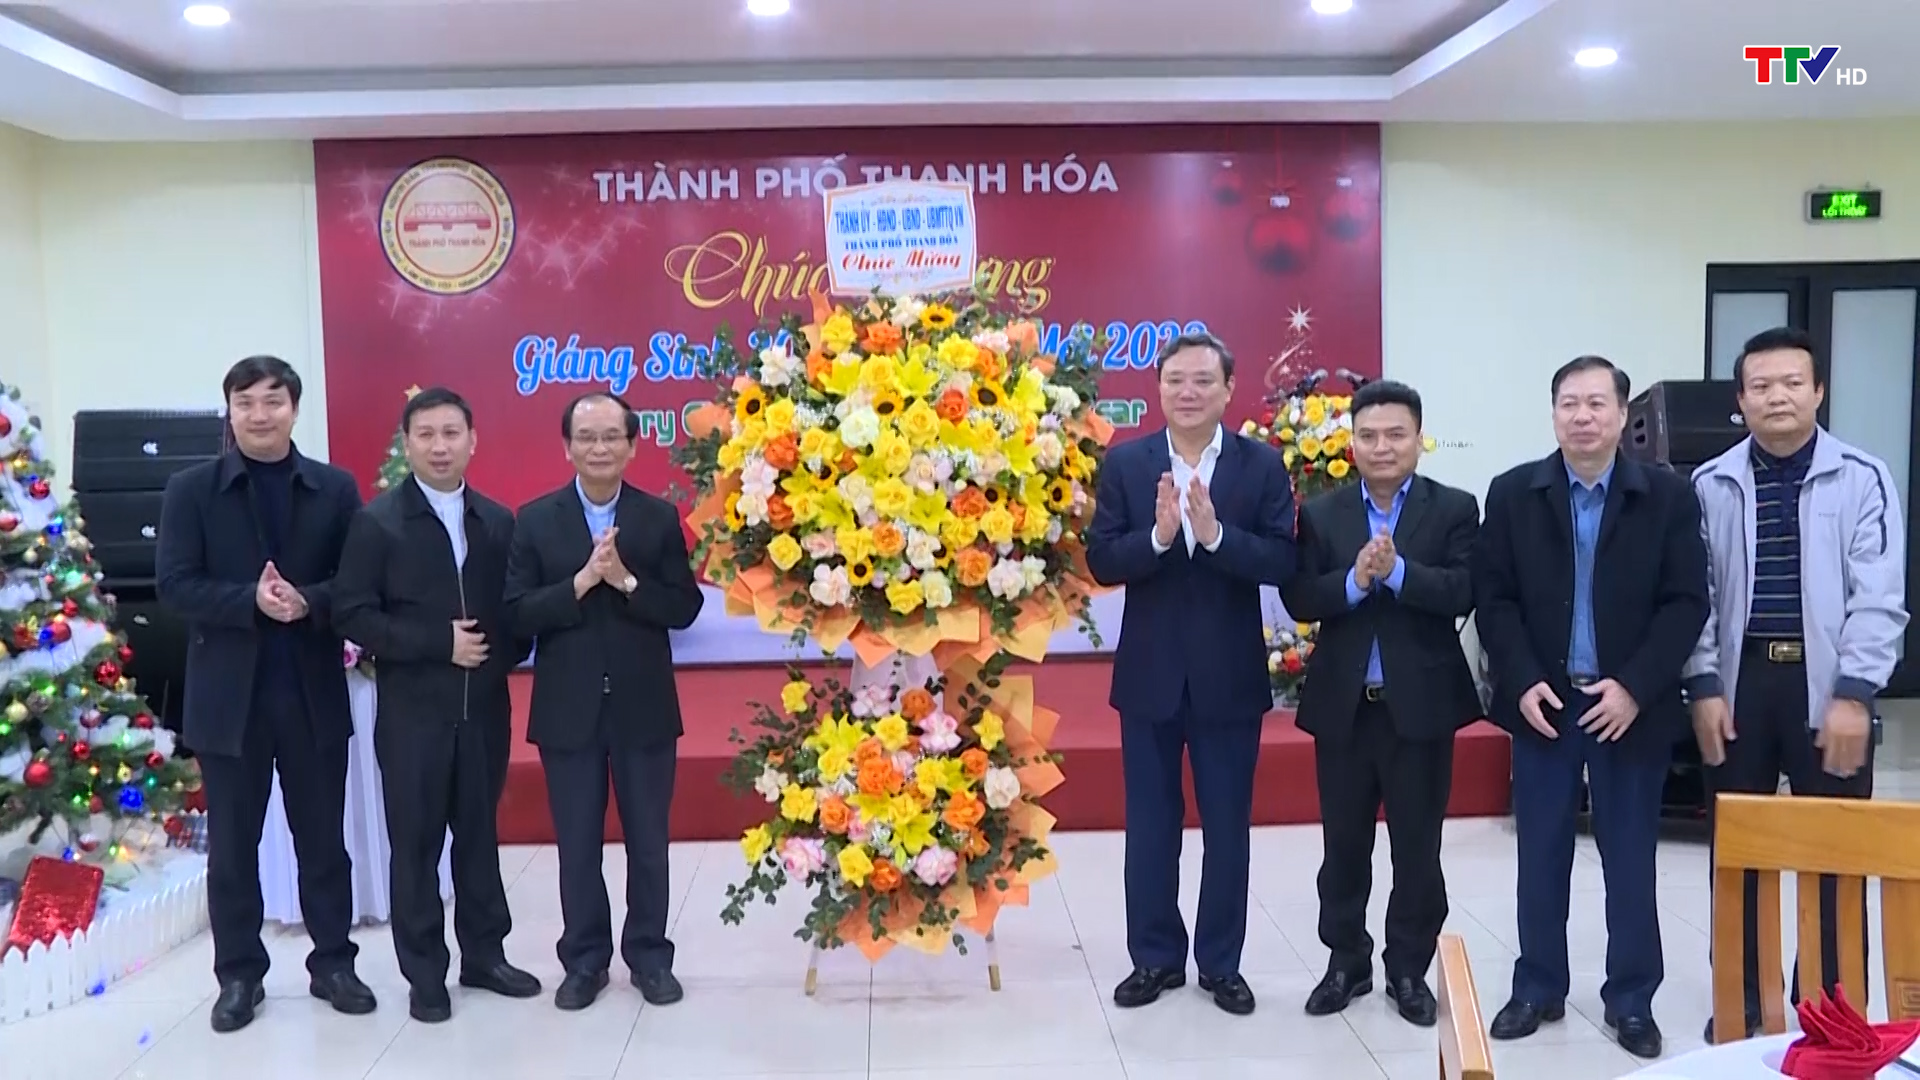 Thành phố Thanh Hóa gặp mặt các chức sắc công giáo nhân dịp lễ Thiên chúa Giáng sinh năm 2022 - Ảnh 3.